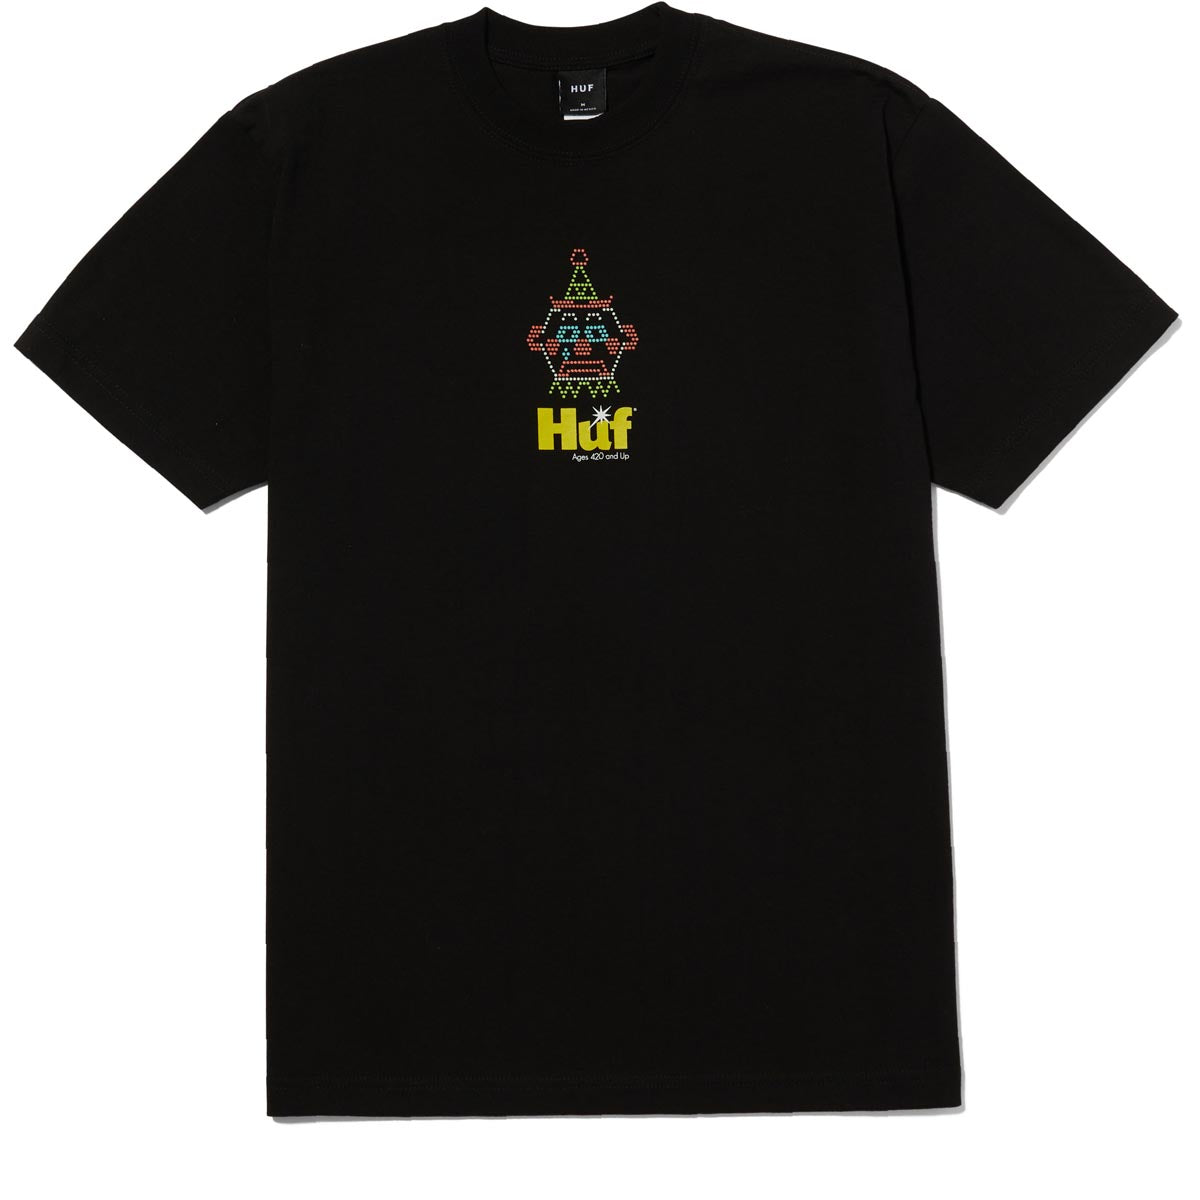 HUF Clownin Around T-Shirt - Black image 1